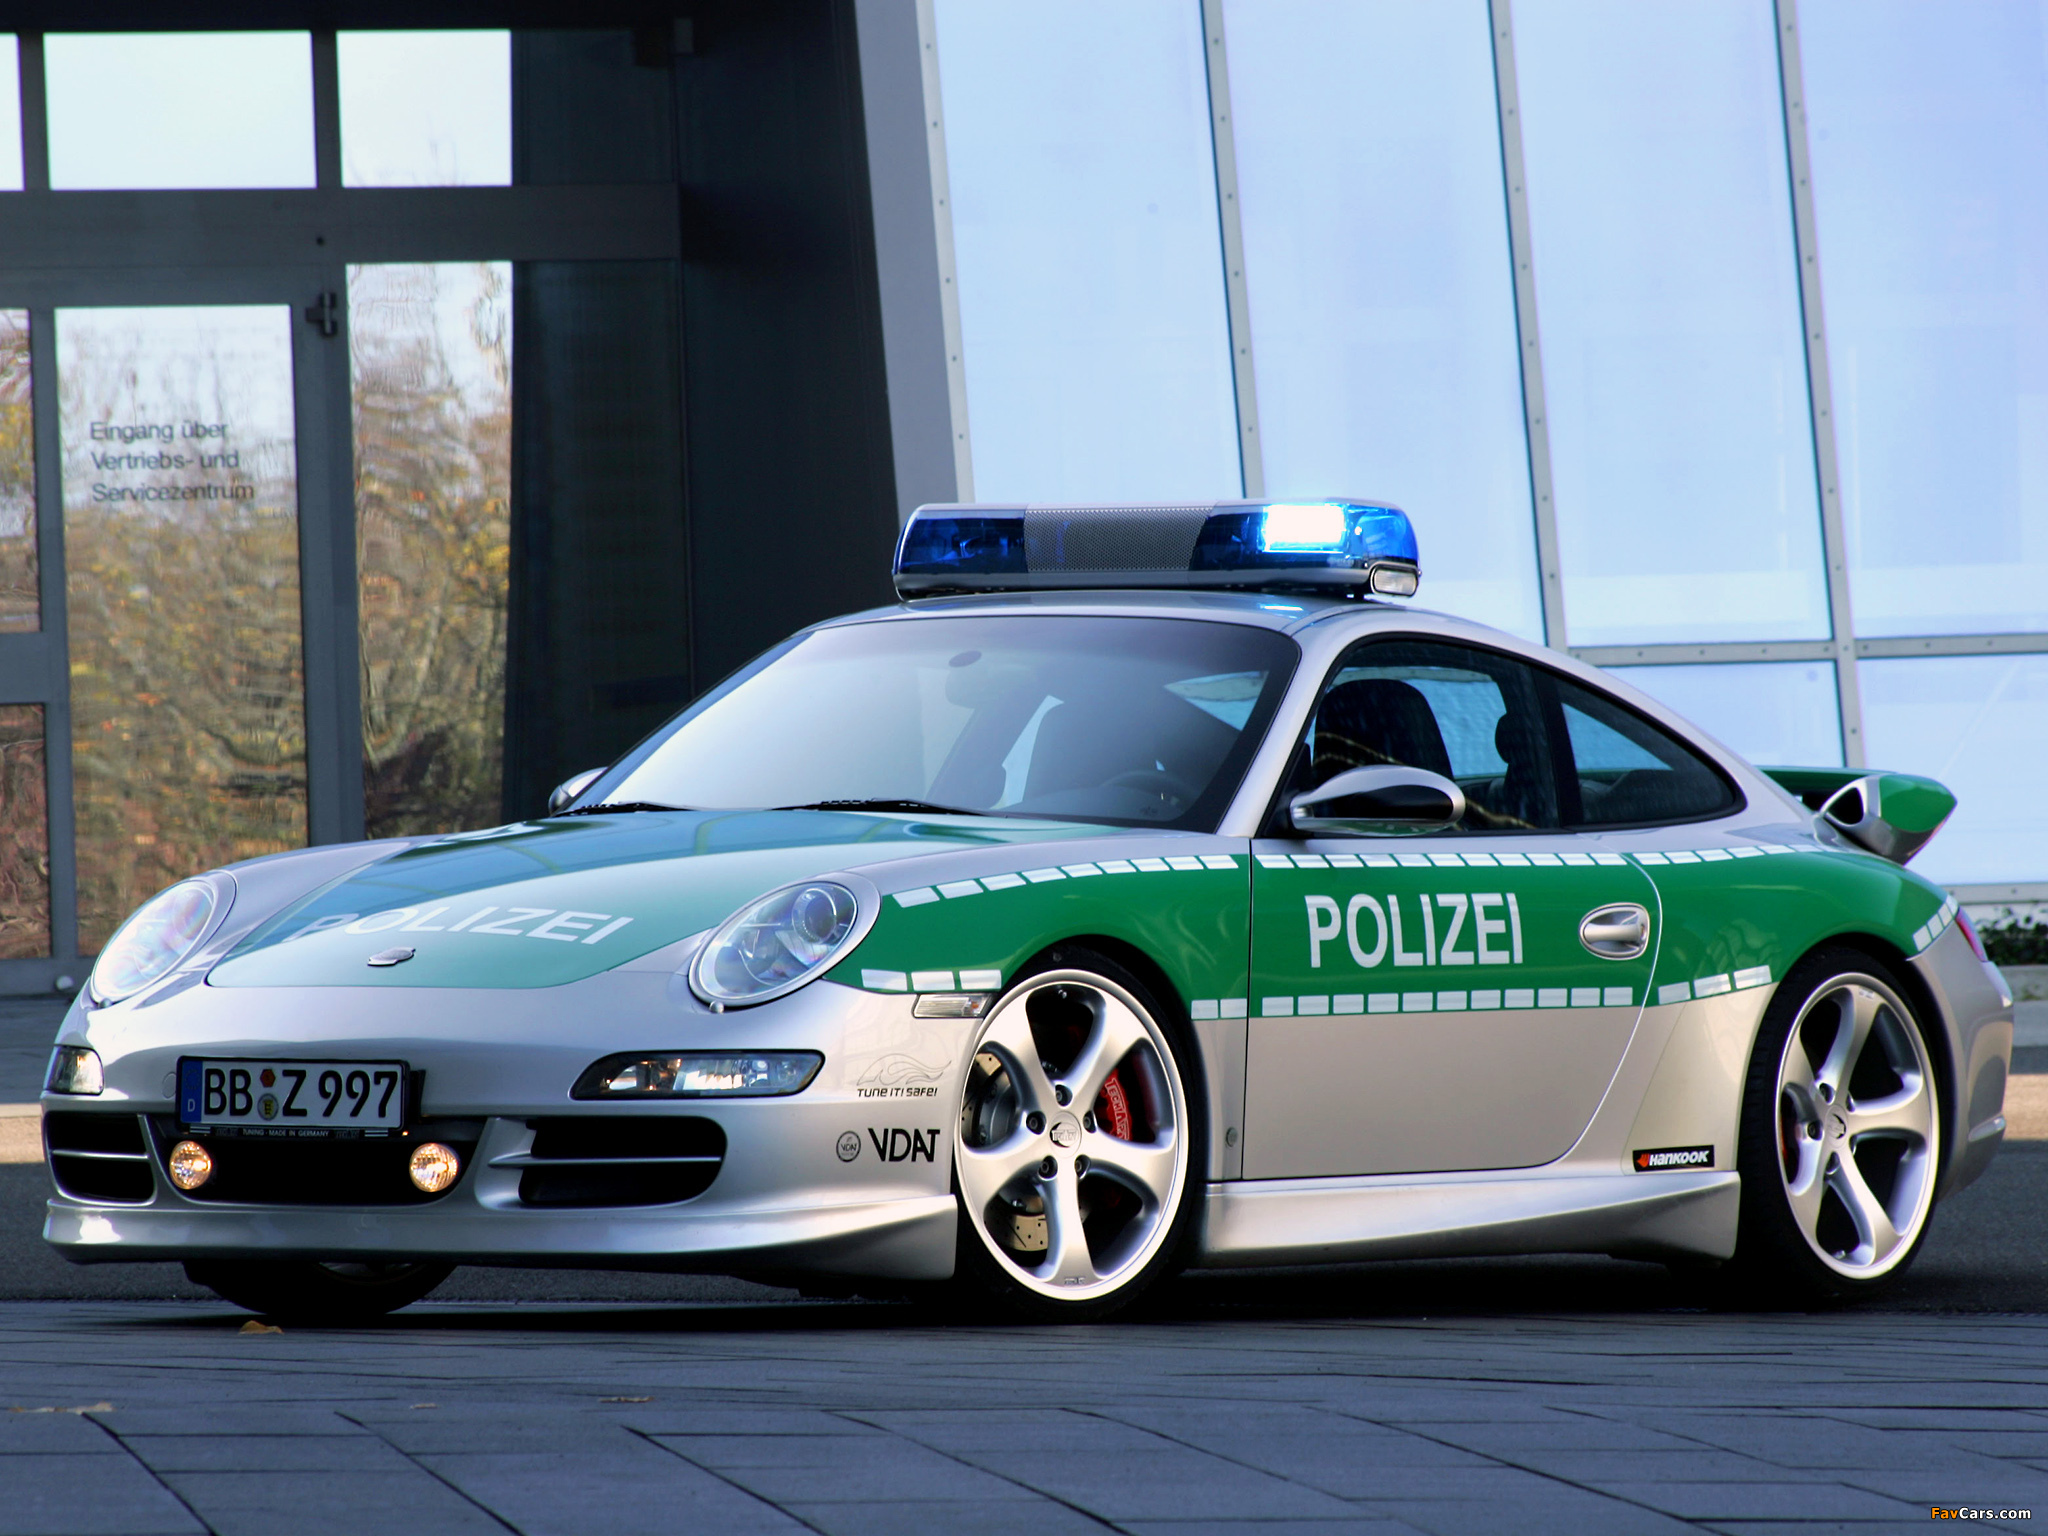 Нужны полицейские машины. Polizei Порше 911. 911 Порше Police. Полиция Дубай Порше 911. Полицейский Porsche 911.